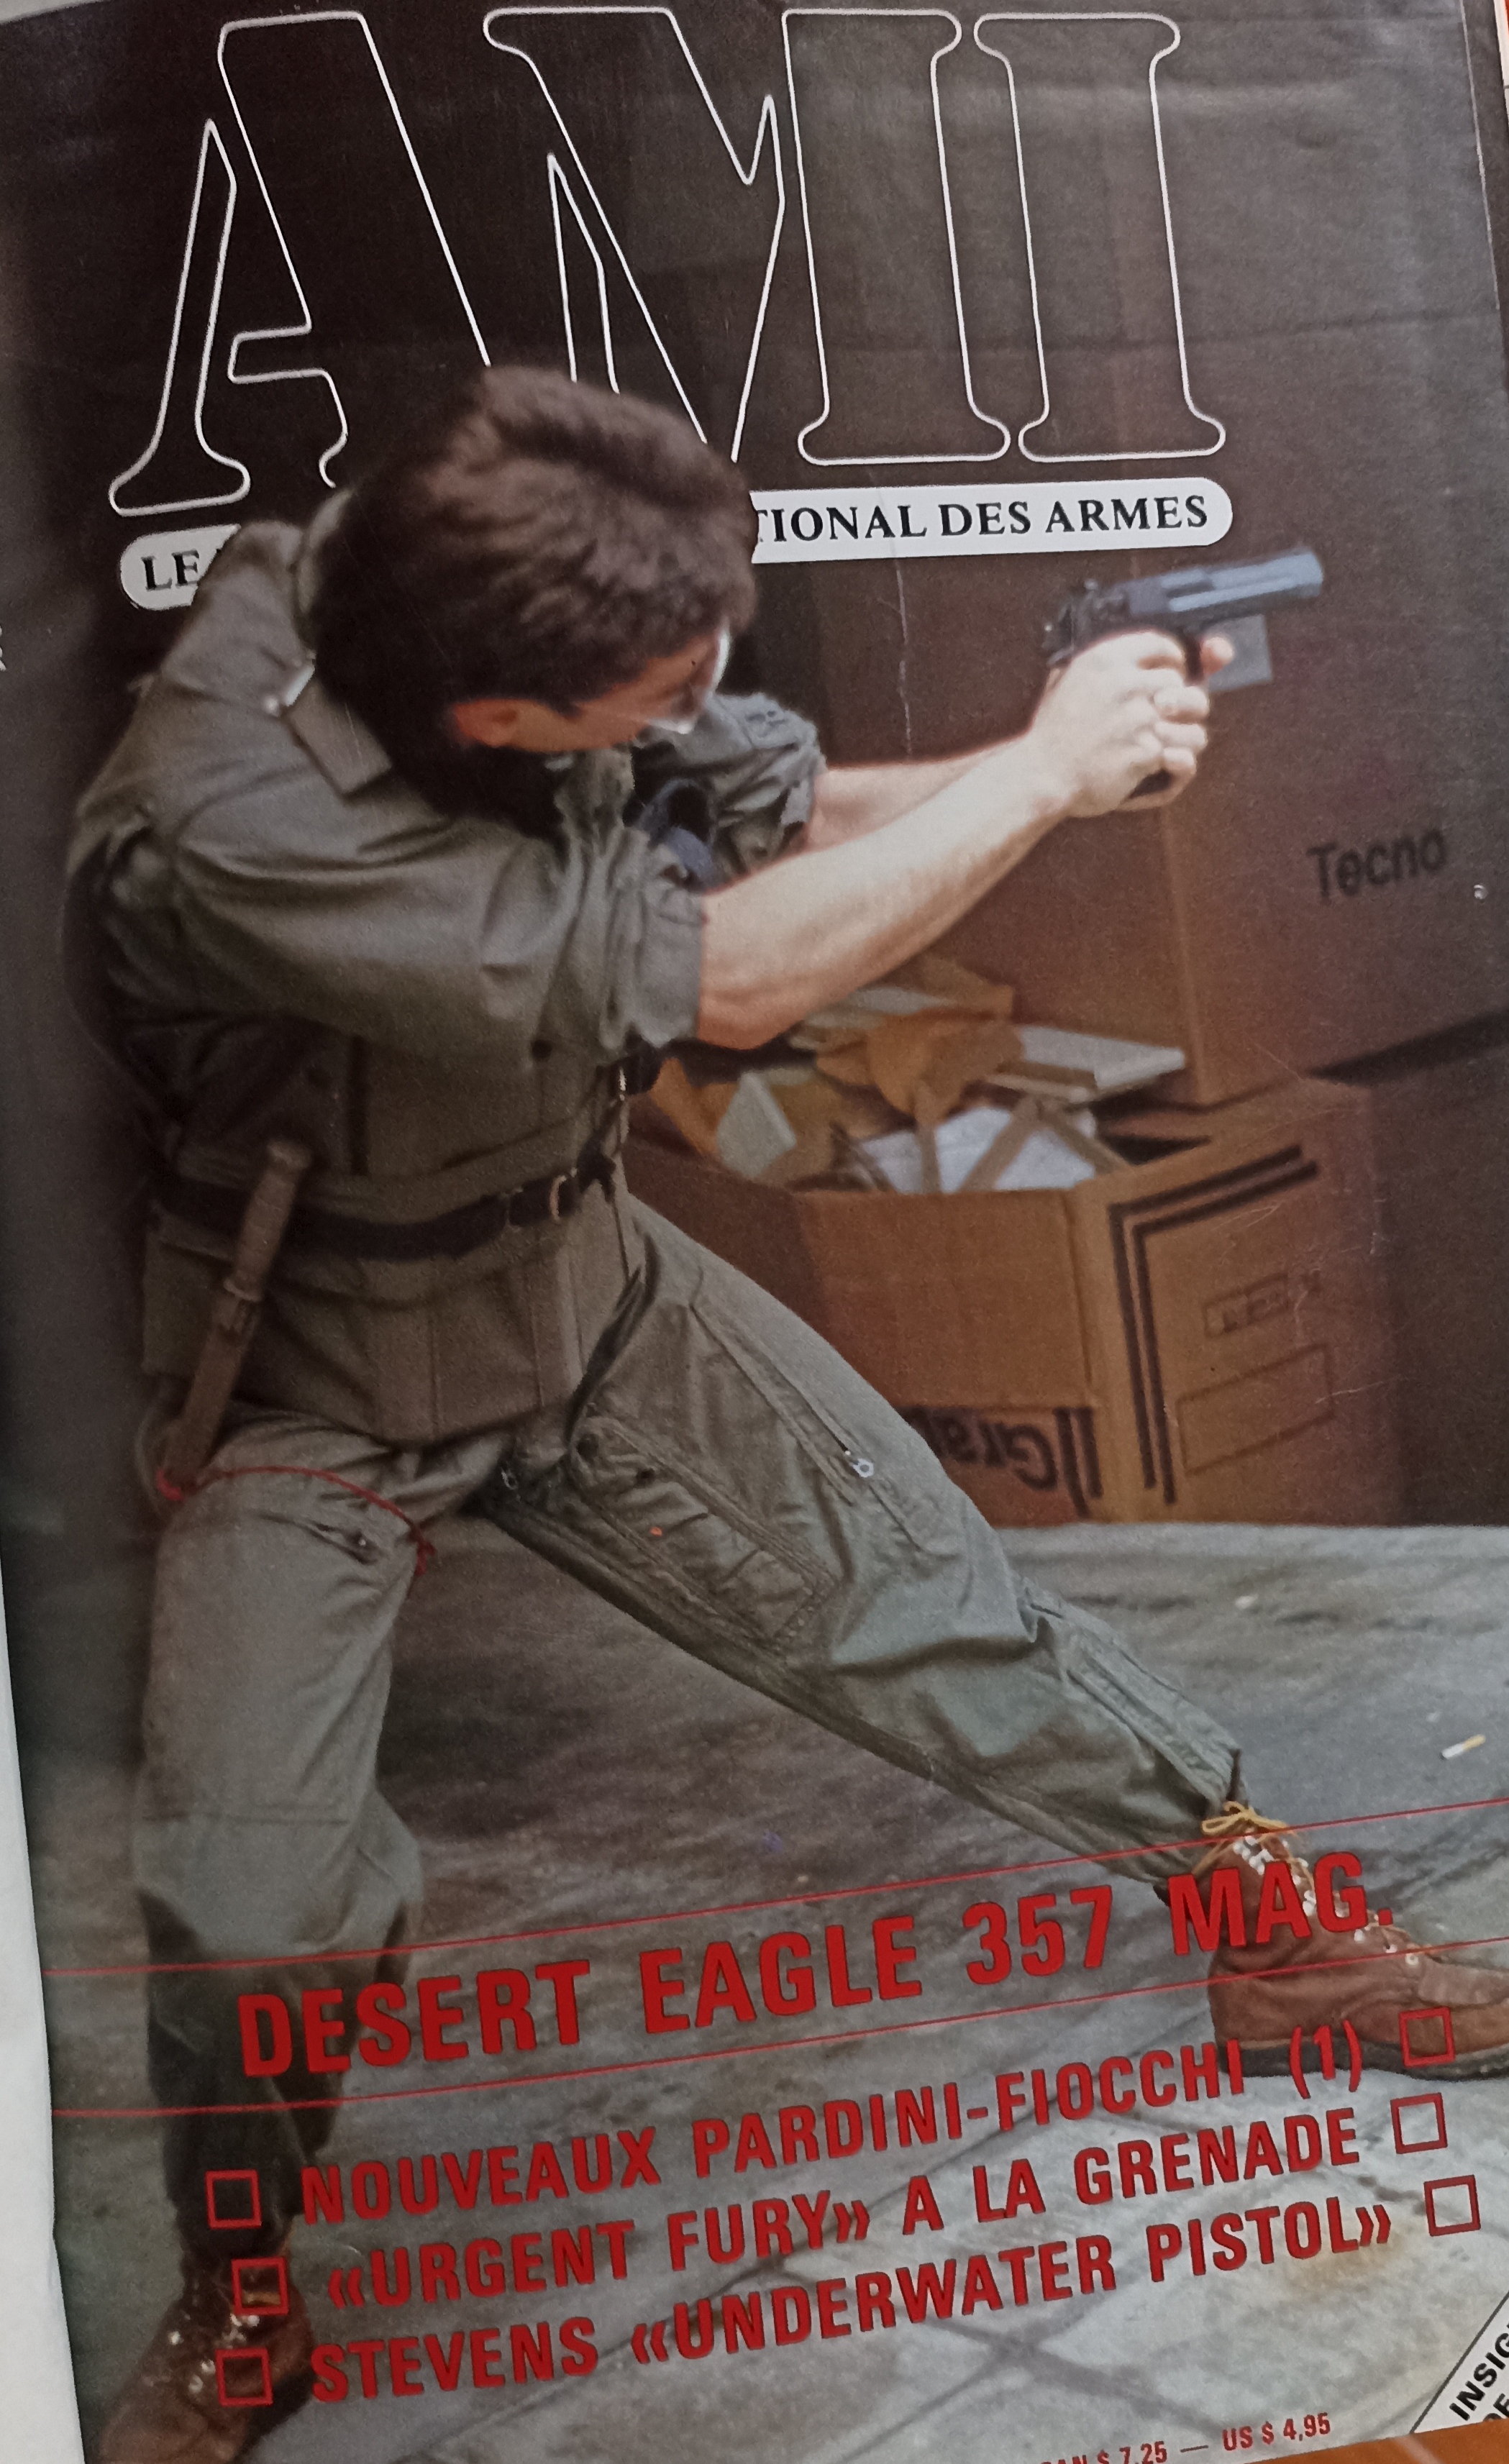 Revista AMI (Armas y Militaría). Colección encuadernada en 15 tomos (símil piel). MUY INTERESANTE